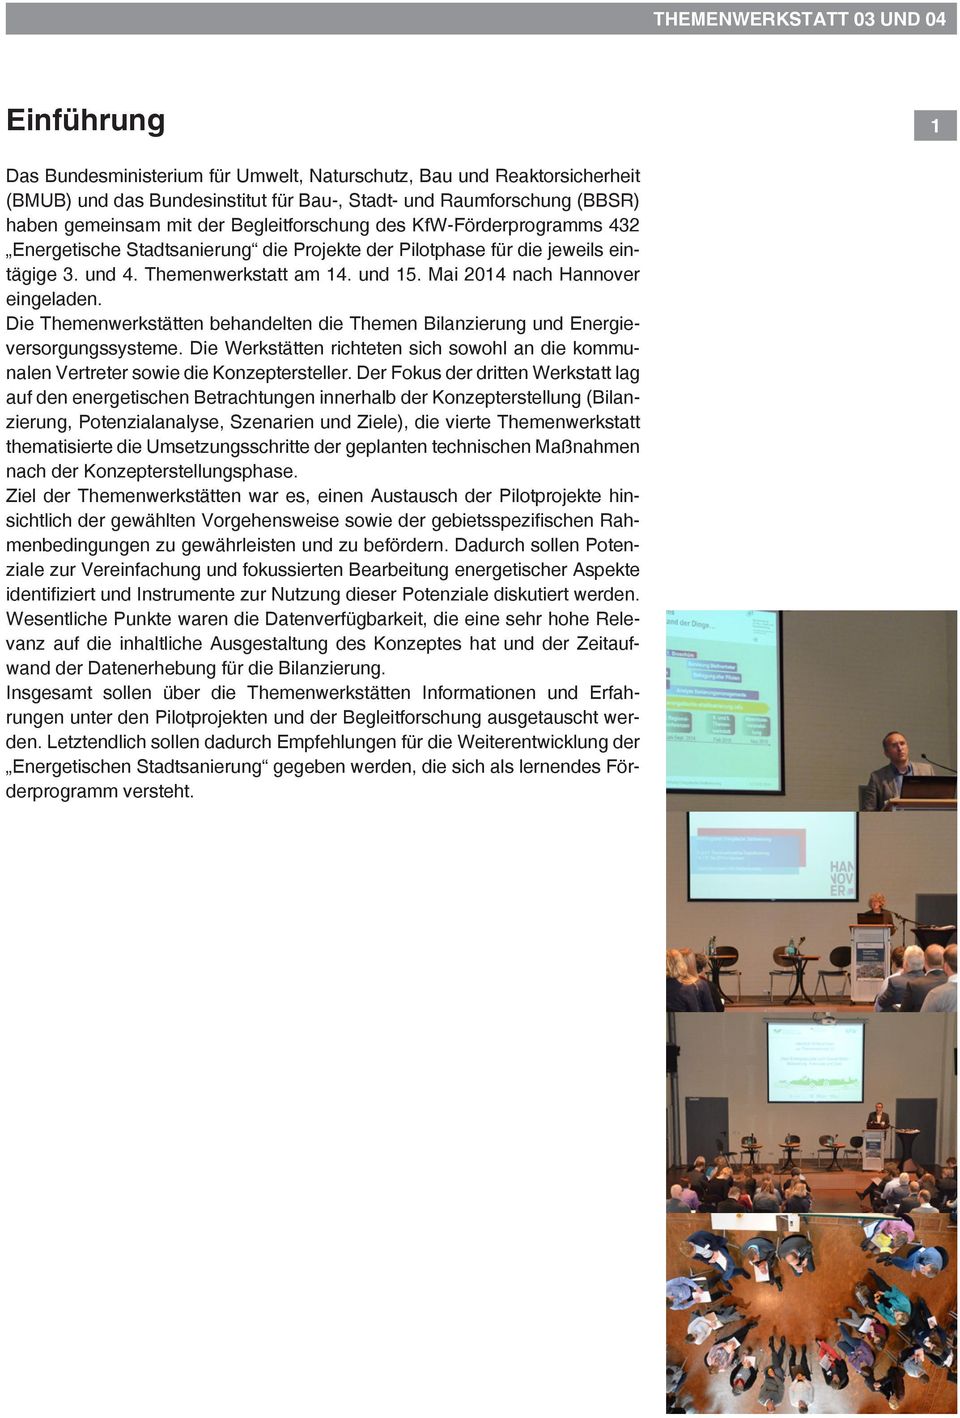 Mai 2014 nach Hannover eingeladen. Die Themenwerkstätten behandelten die Themen Bilanzierung und Energieversorgungssysteme.